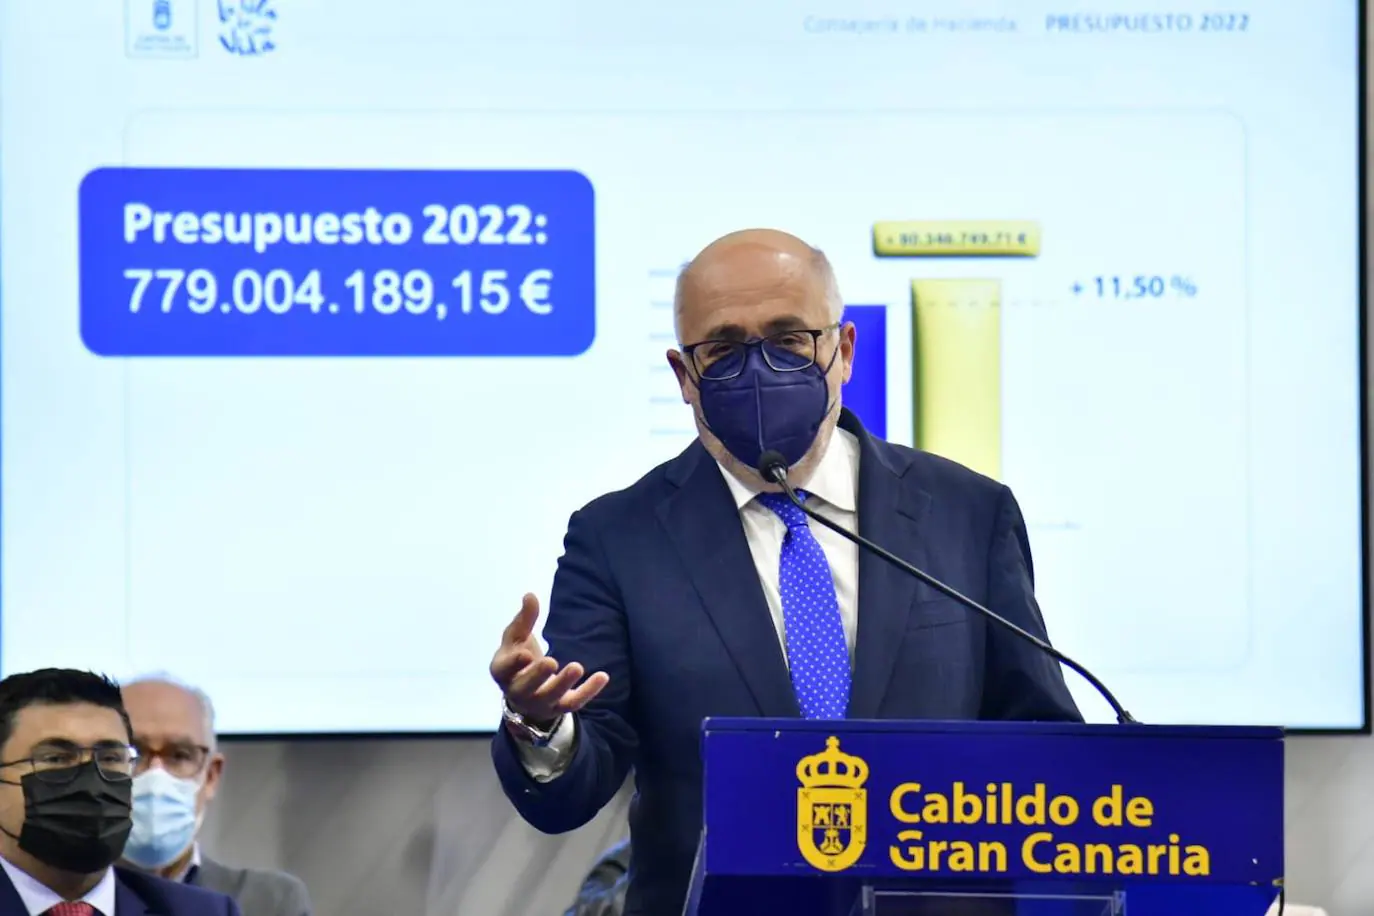 El presupuesto del Cabildo para 2022 crece un 11,5%, hasta los 779 millones